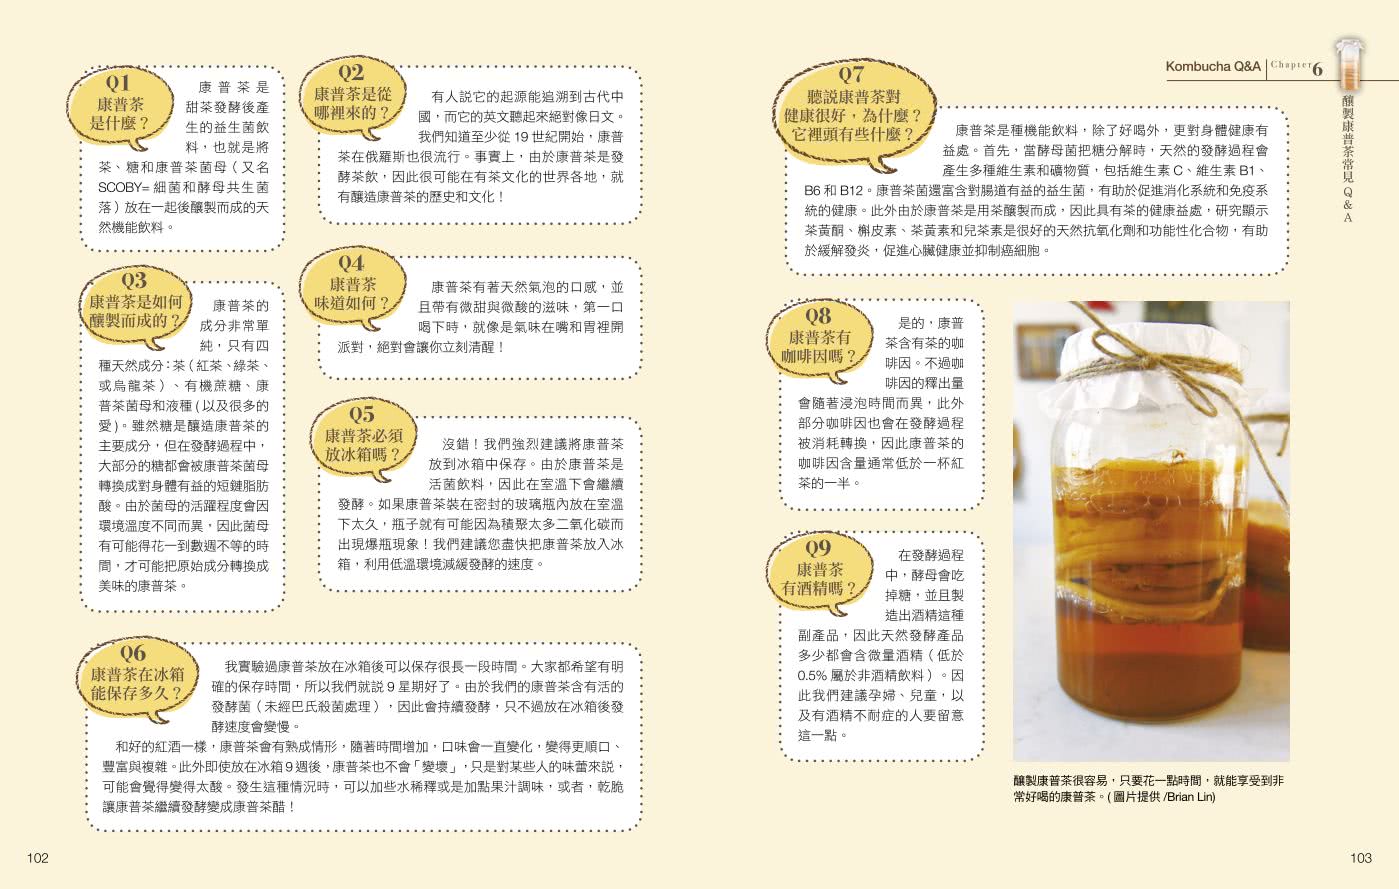 愛上康普茶:醫學博士 step by step 親授 從釀製到應用 打造健康好腸道